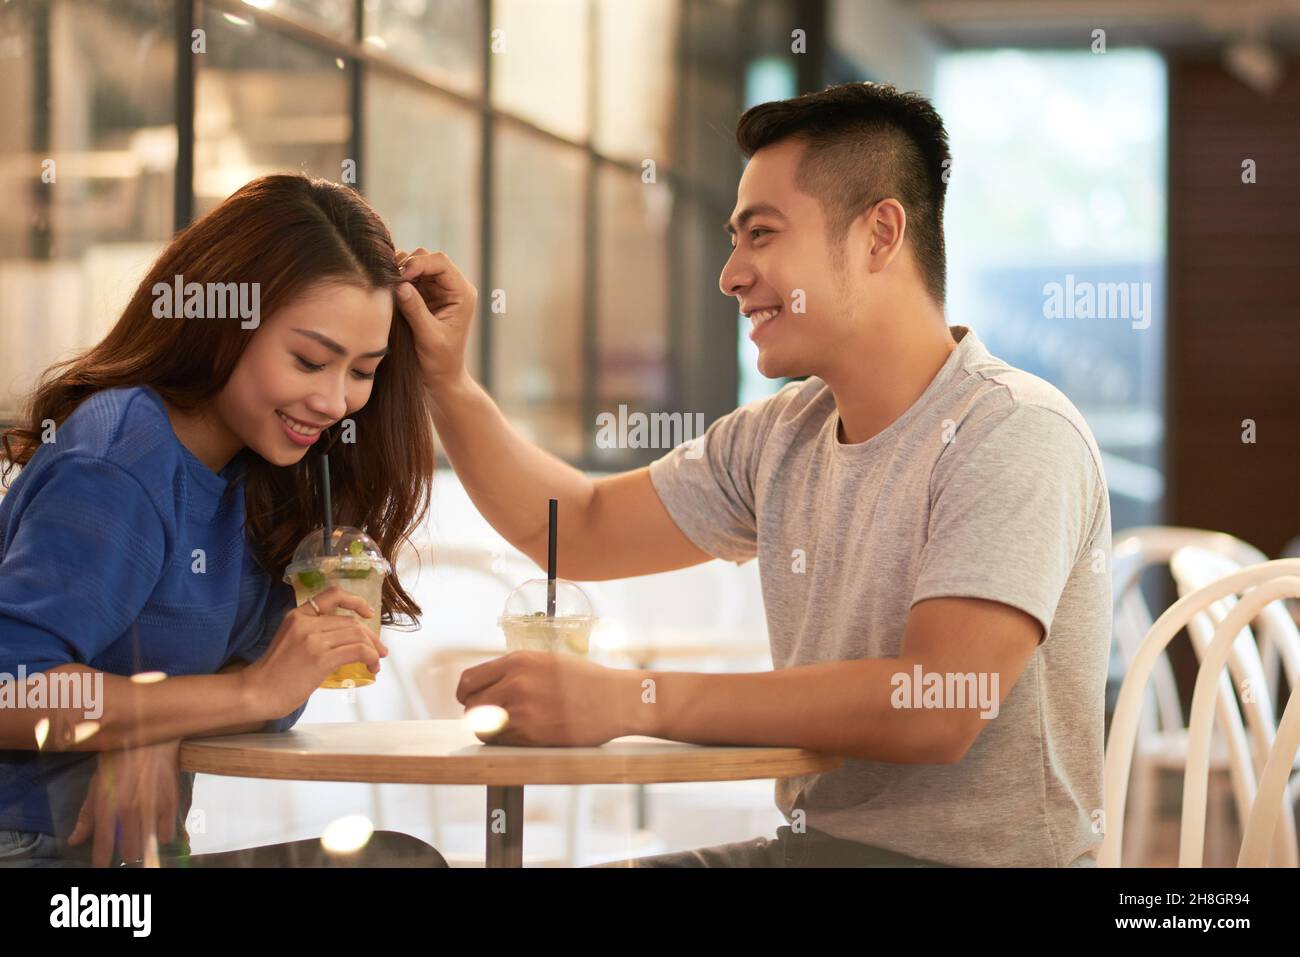 Lächelnder junger asiatischer Mann, der an einem kleinen runden Tisch sitzt und die Haare im Café an die Freundin anpasst Stockfoto